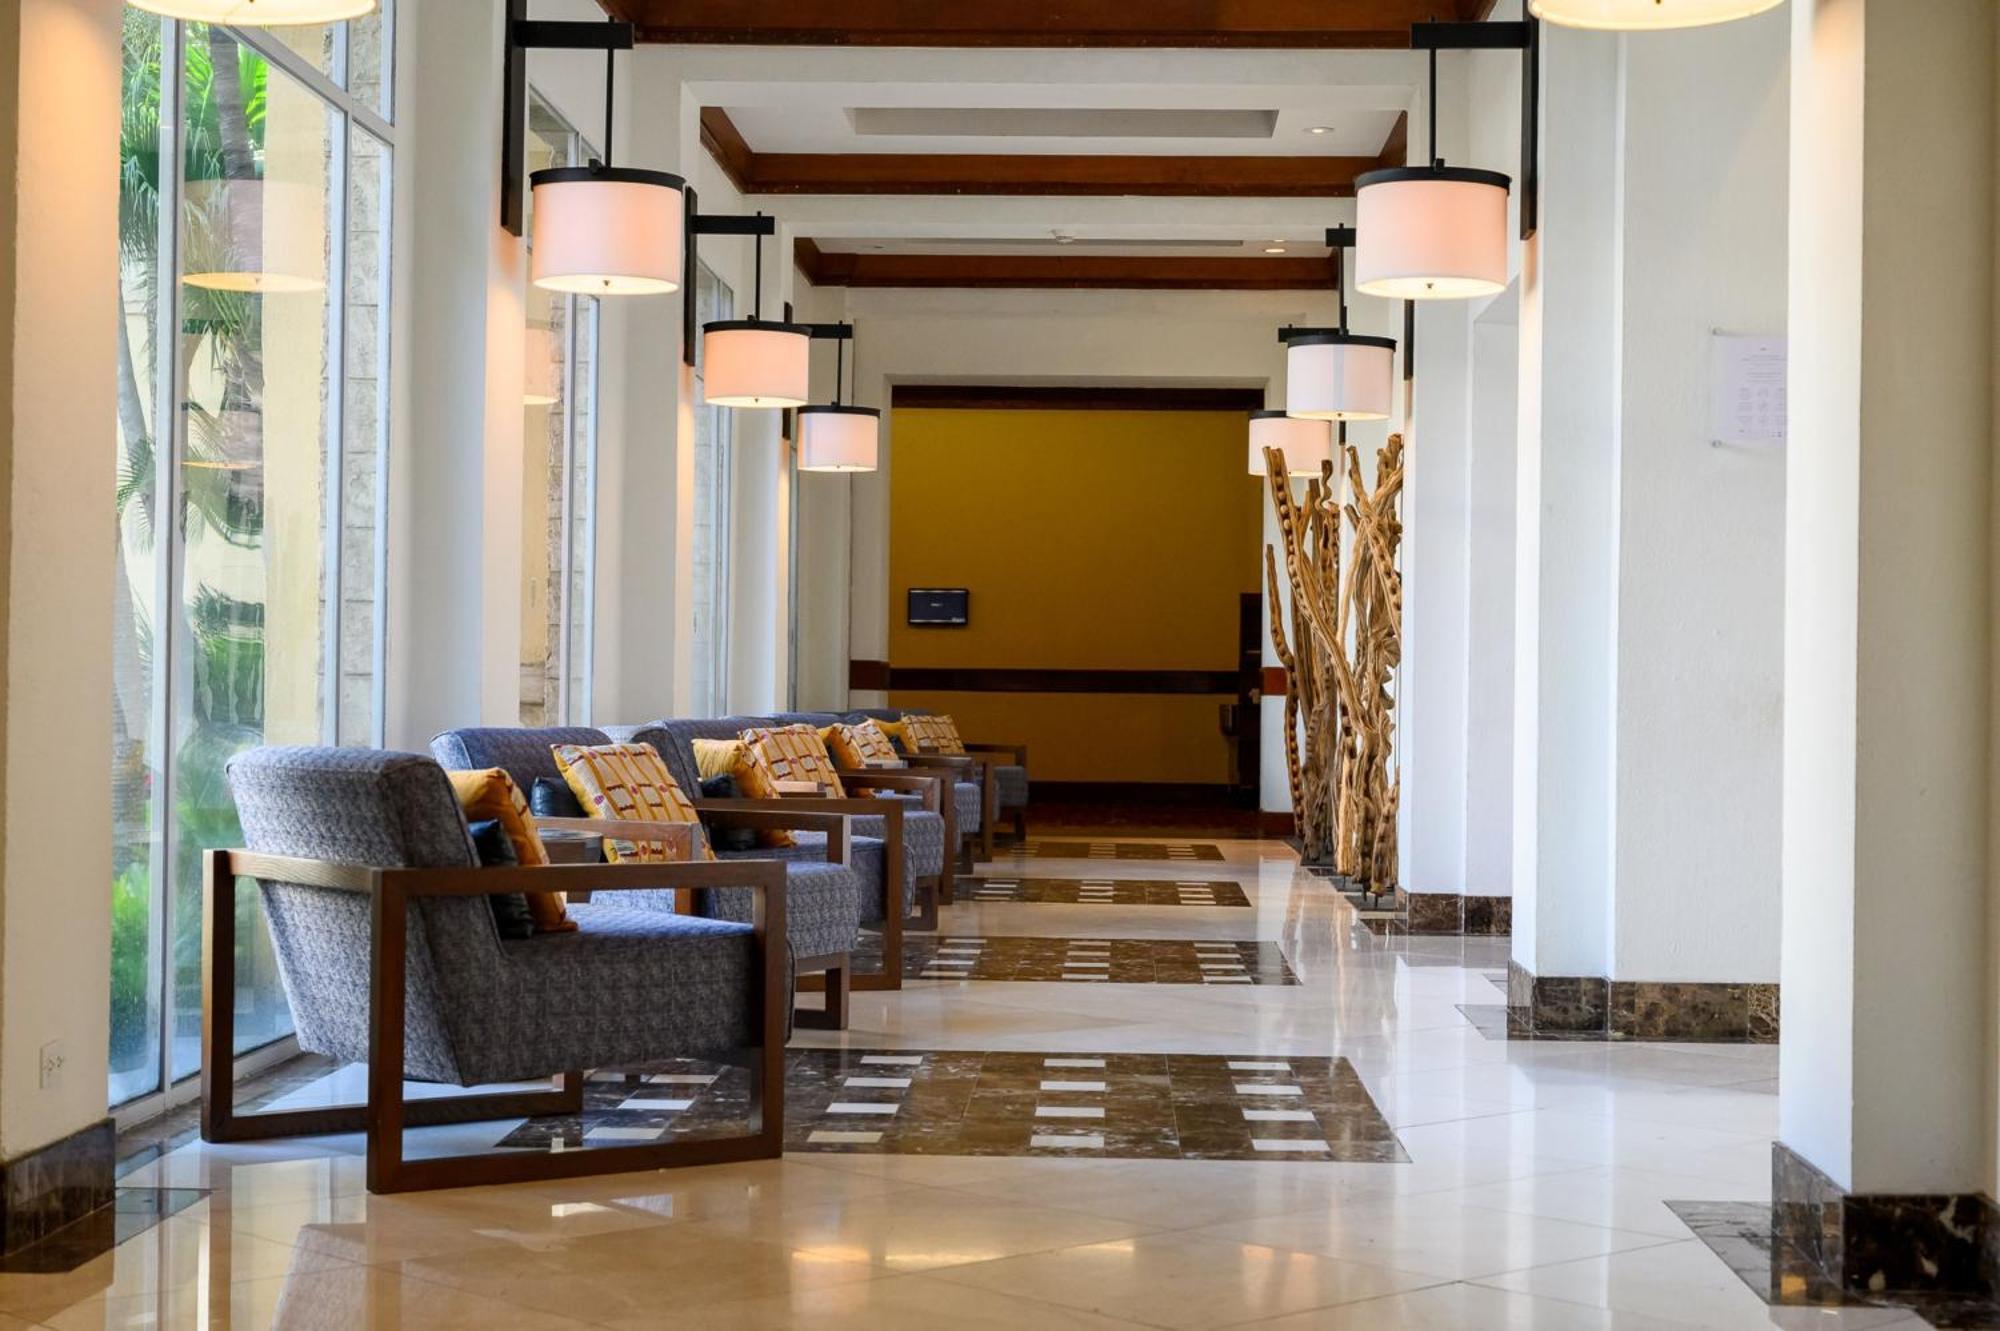 Real Intercontinental Metrocentro Managua, An Ihg Hotel מראה חיצוני תמונה